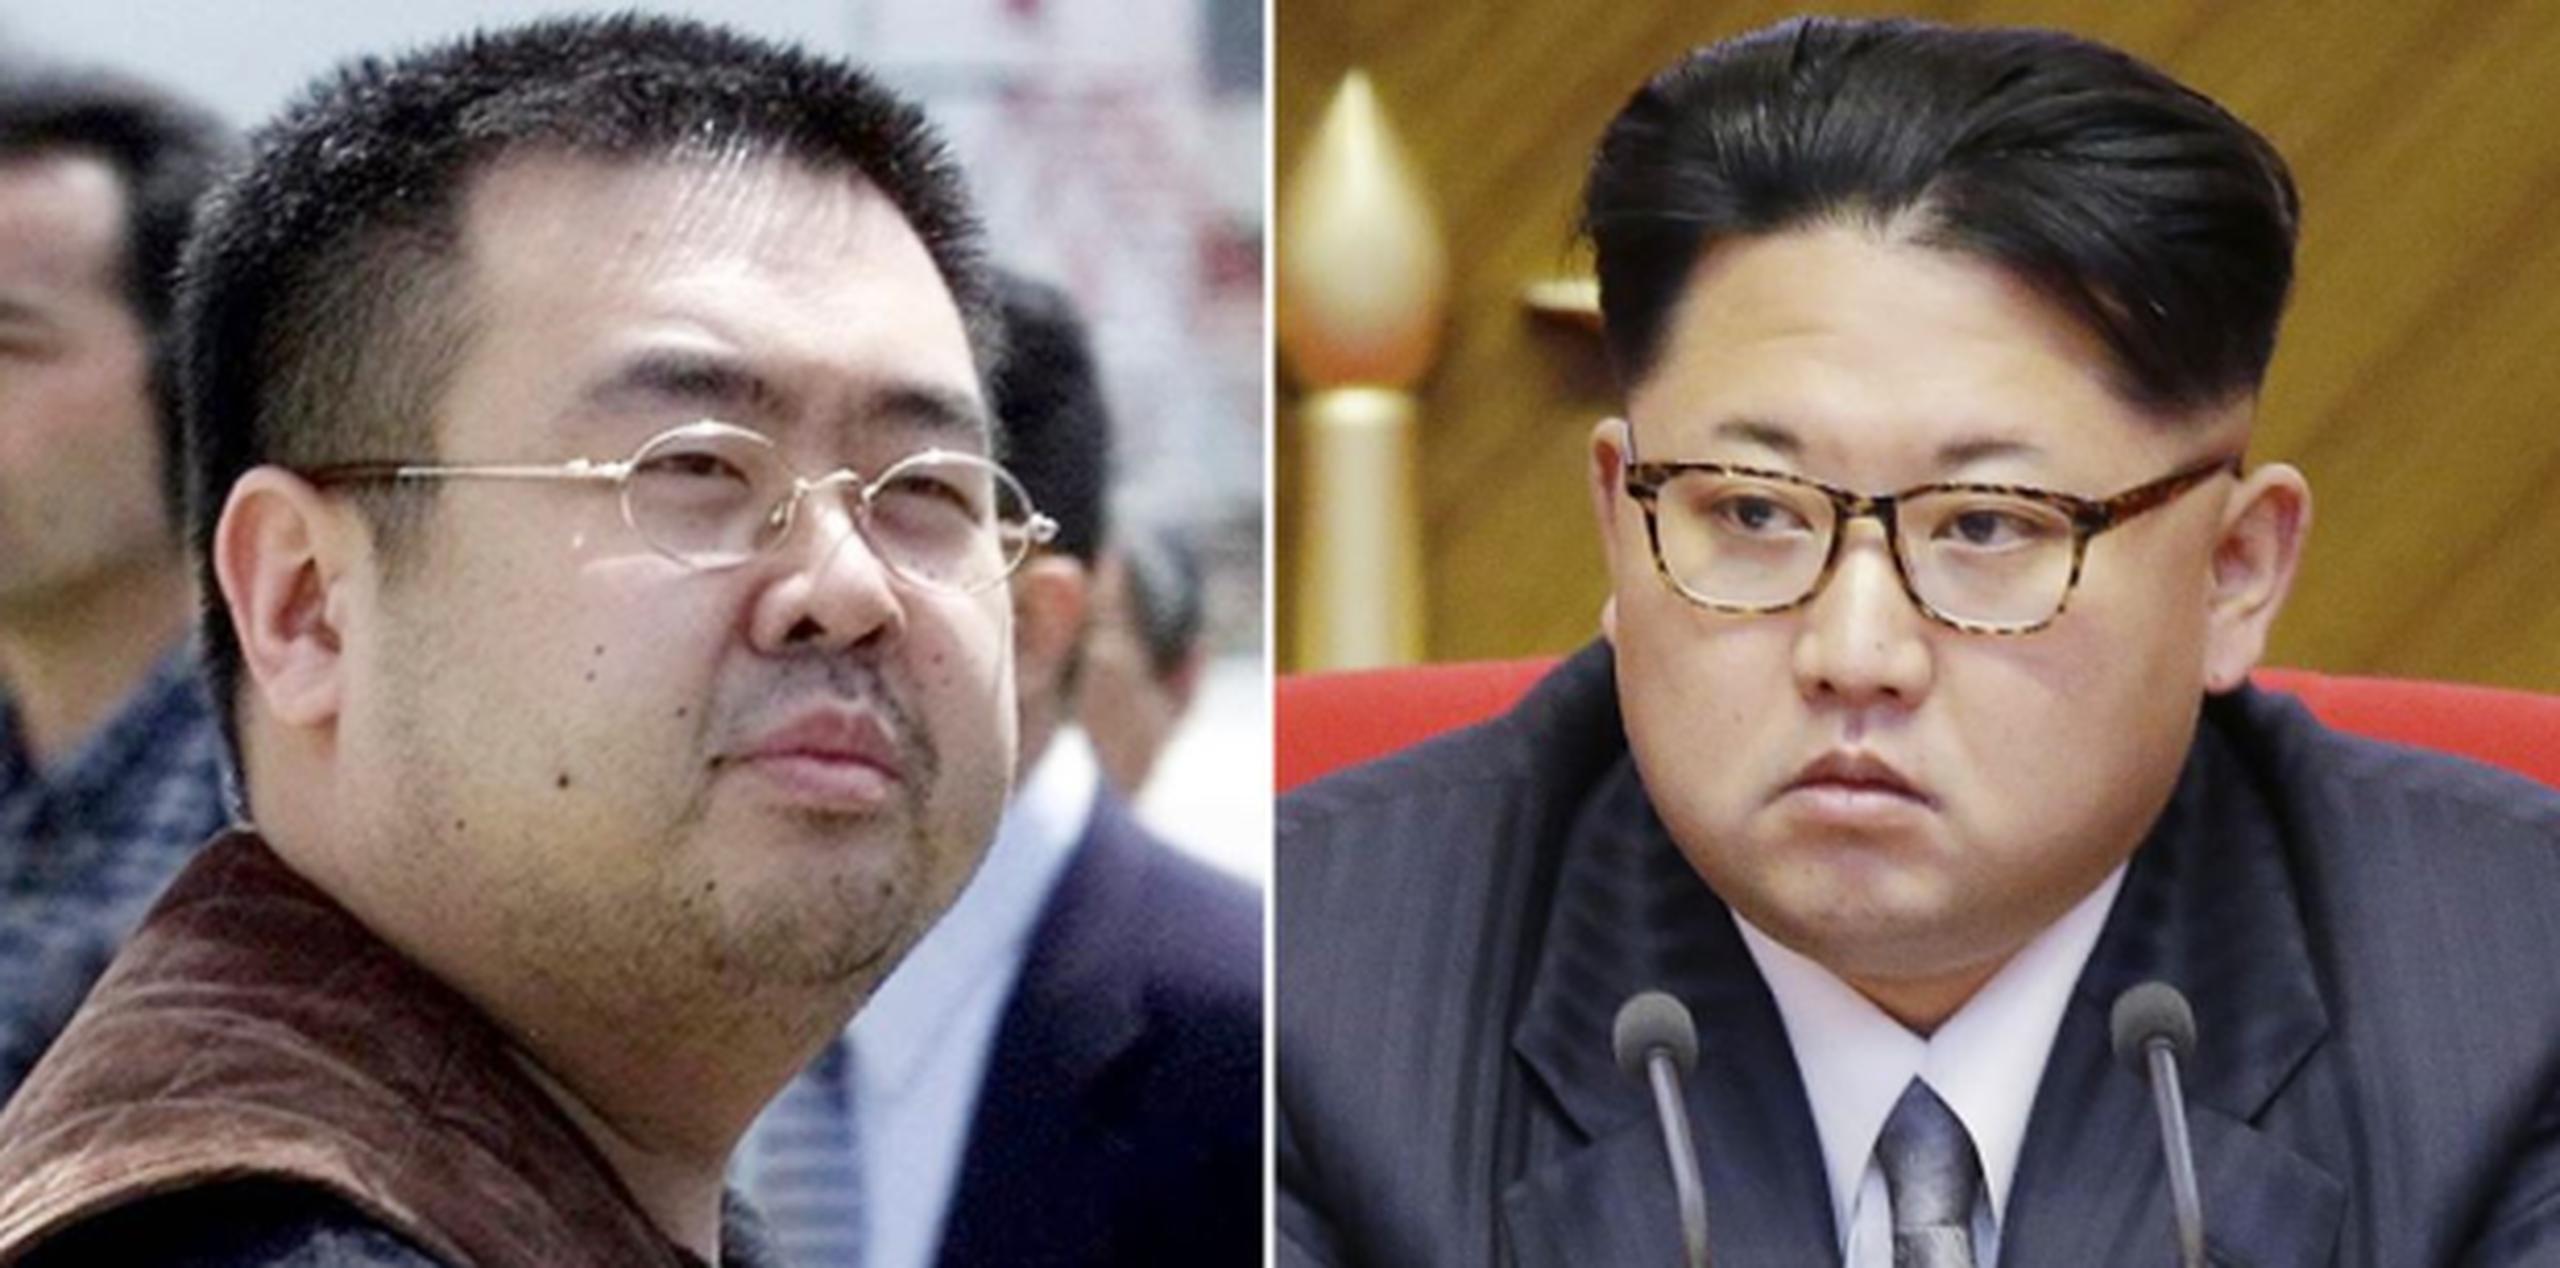 El Ministerio surcoreano de Defensa cree que el compuesto usado en el aparente envenenamiento de Kim podría ser ricino, cianuro de potasio, neostigmina, tetrodotoxina o un agente nervioso. (AP)